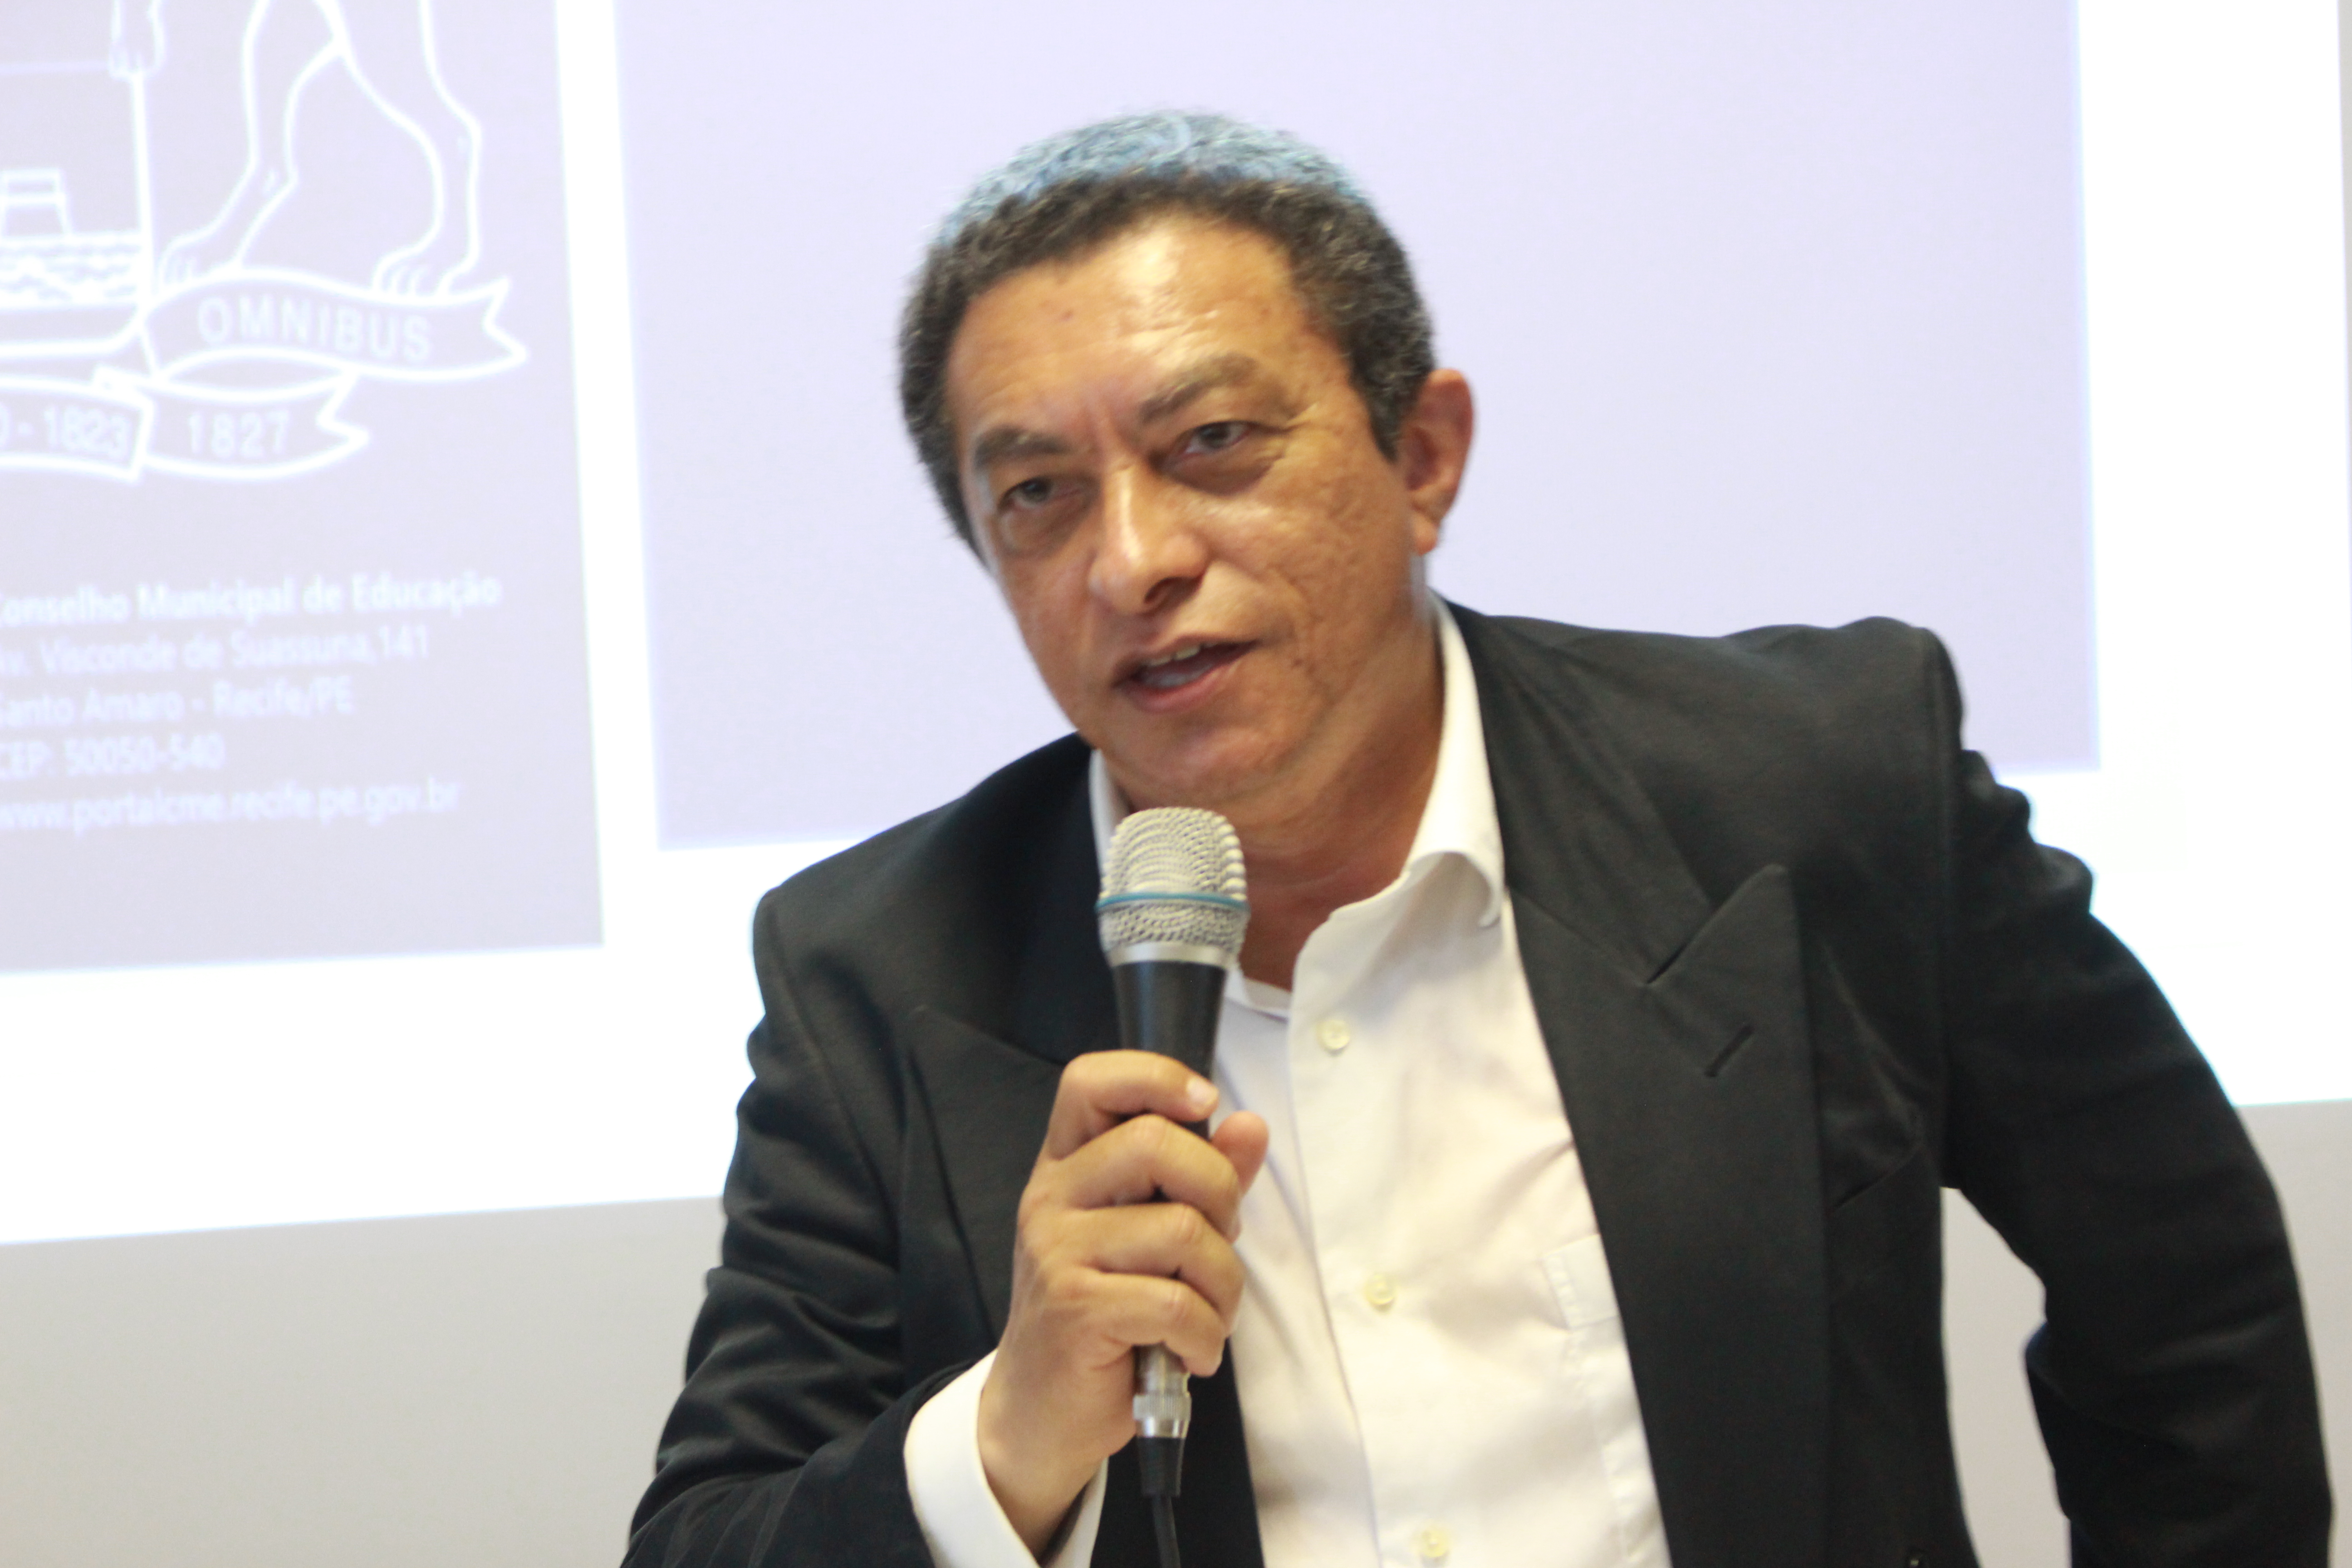 Encerramento do evento pelo Prof. Francisco Luiz- Presidente do CME